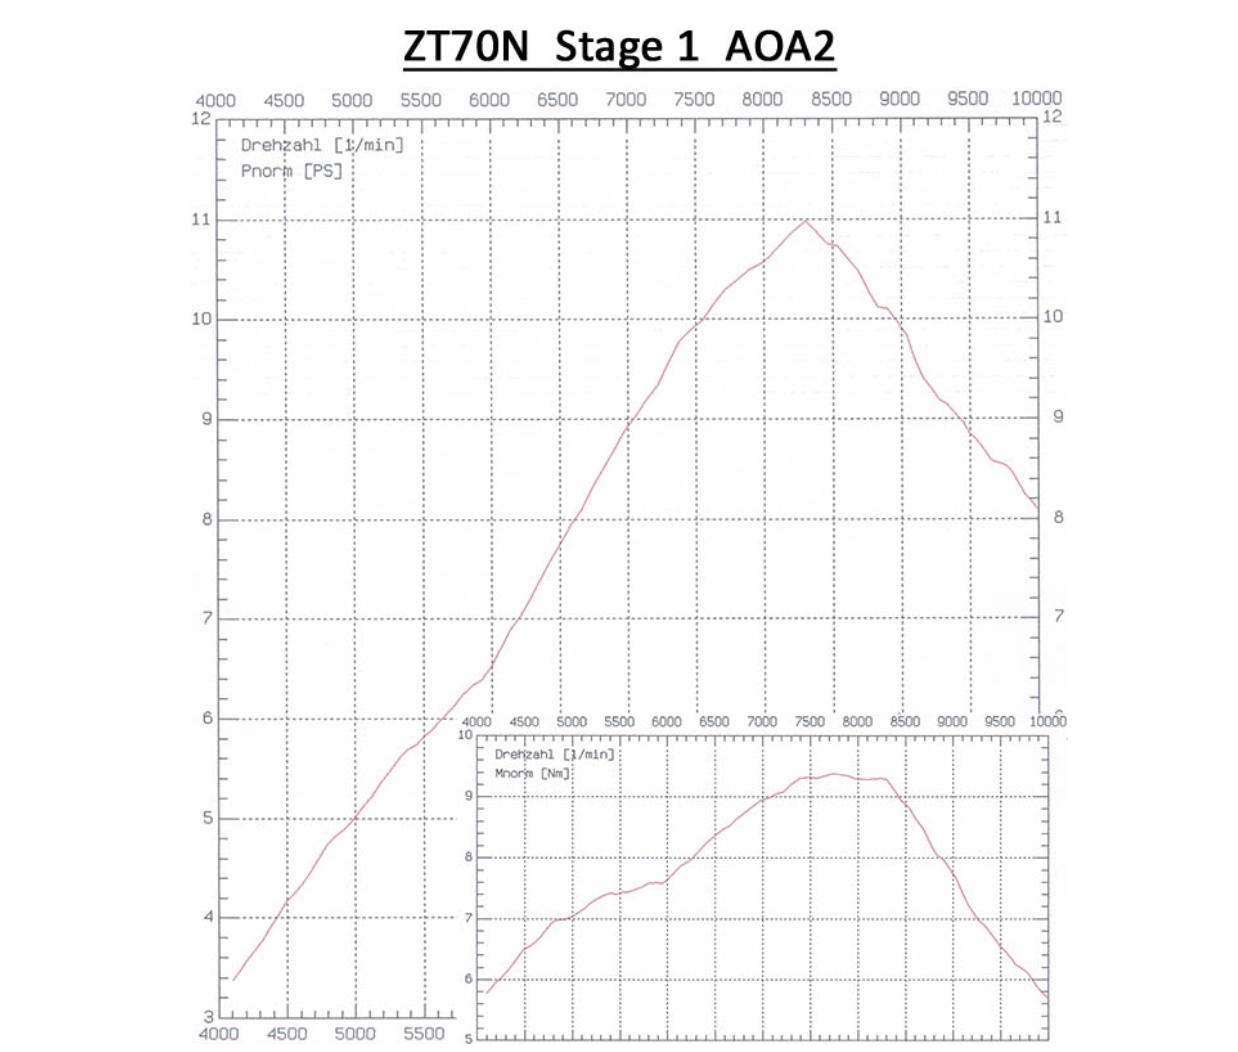 Tuning-Zylinderkit ZT70N Stage 2 (70ccm) - für Simson S70, SR80, S83